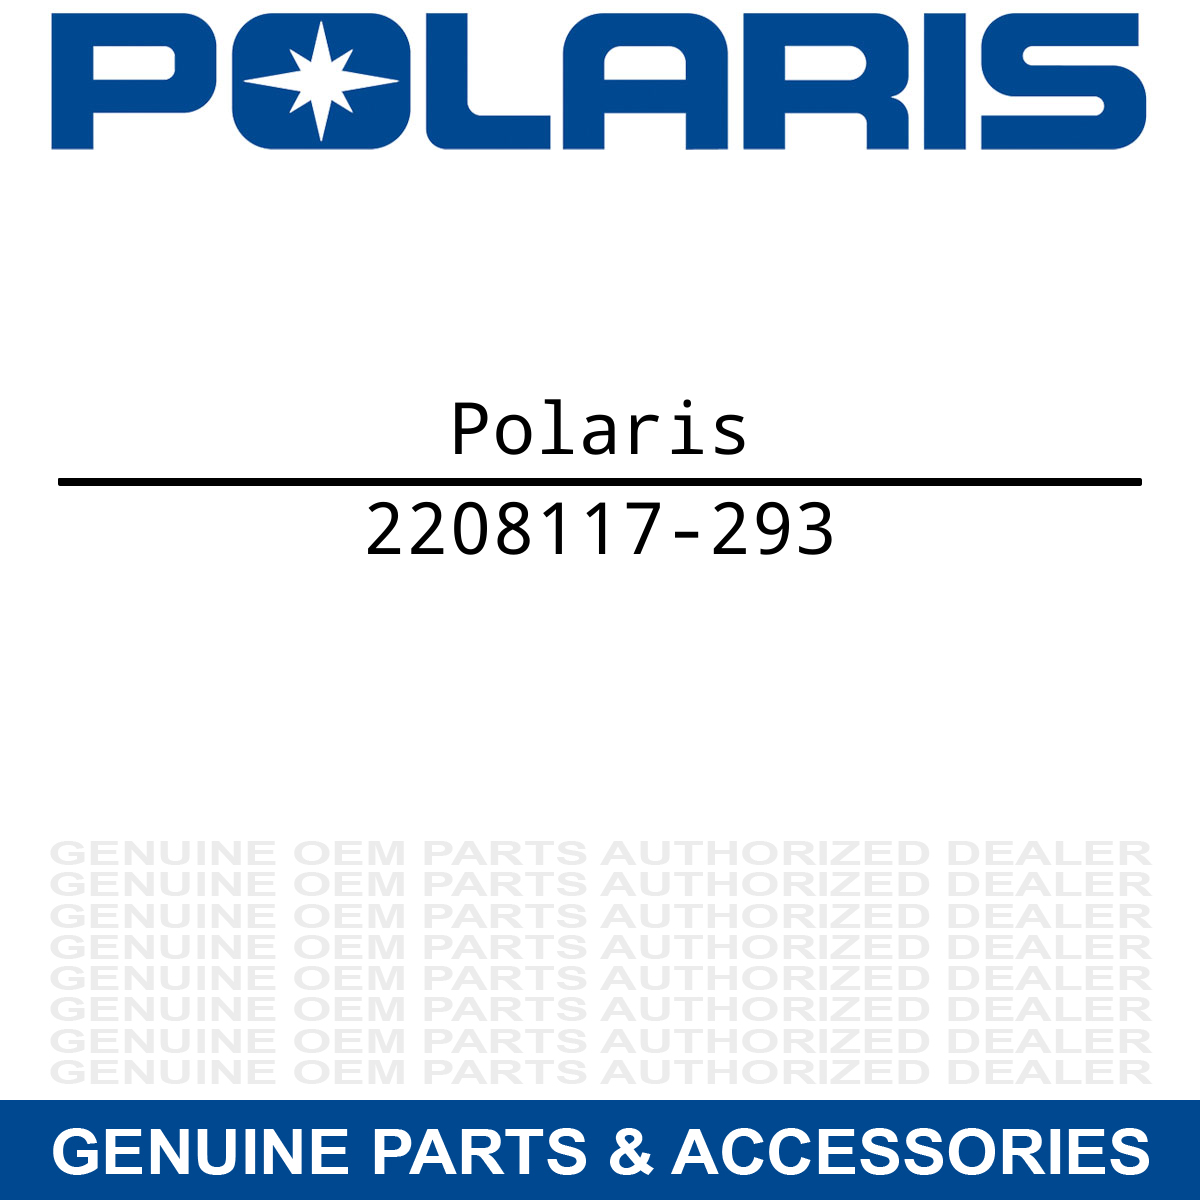 Polaris 2208117-293 Indy Red Swing Arm Kit